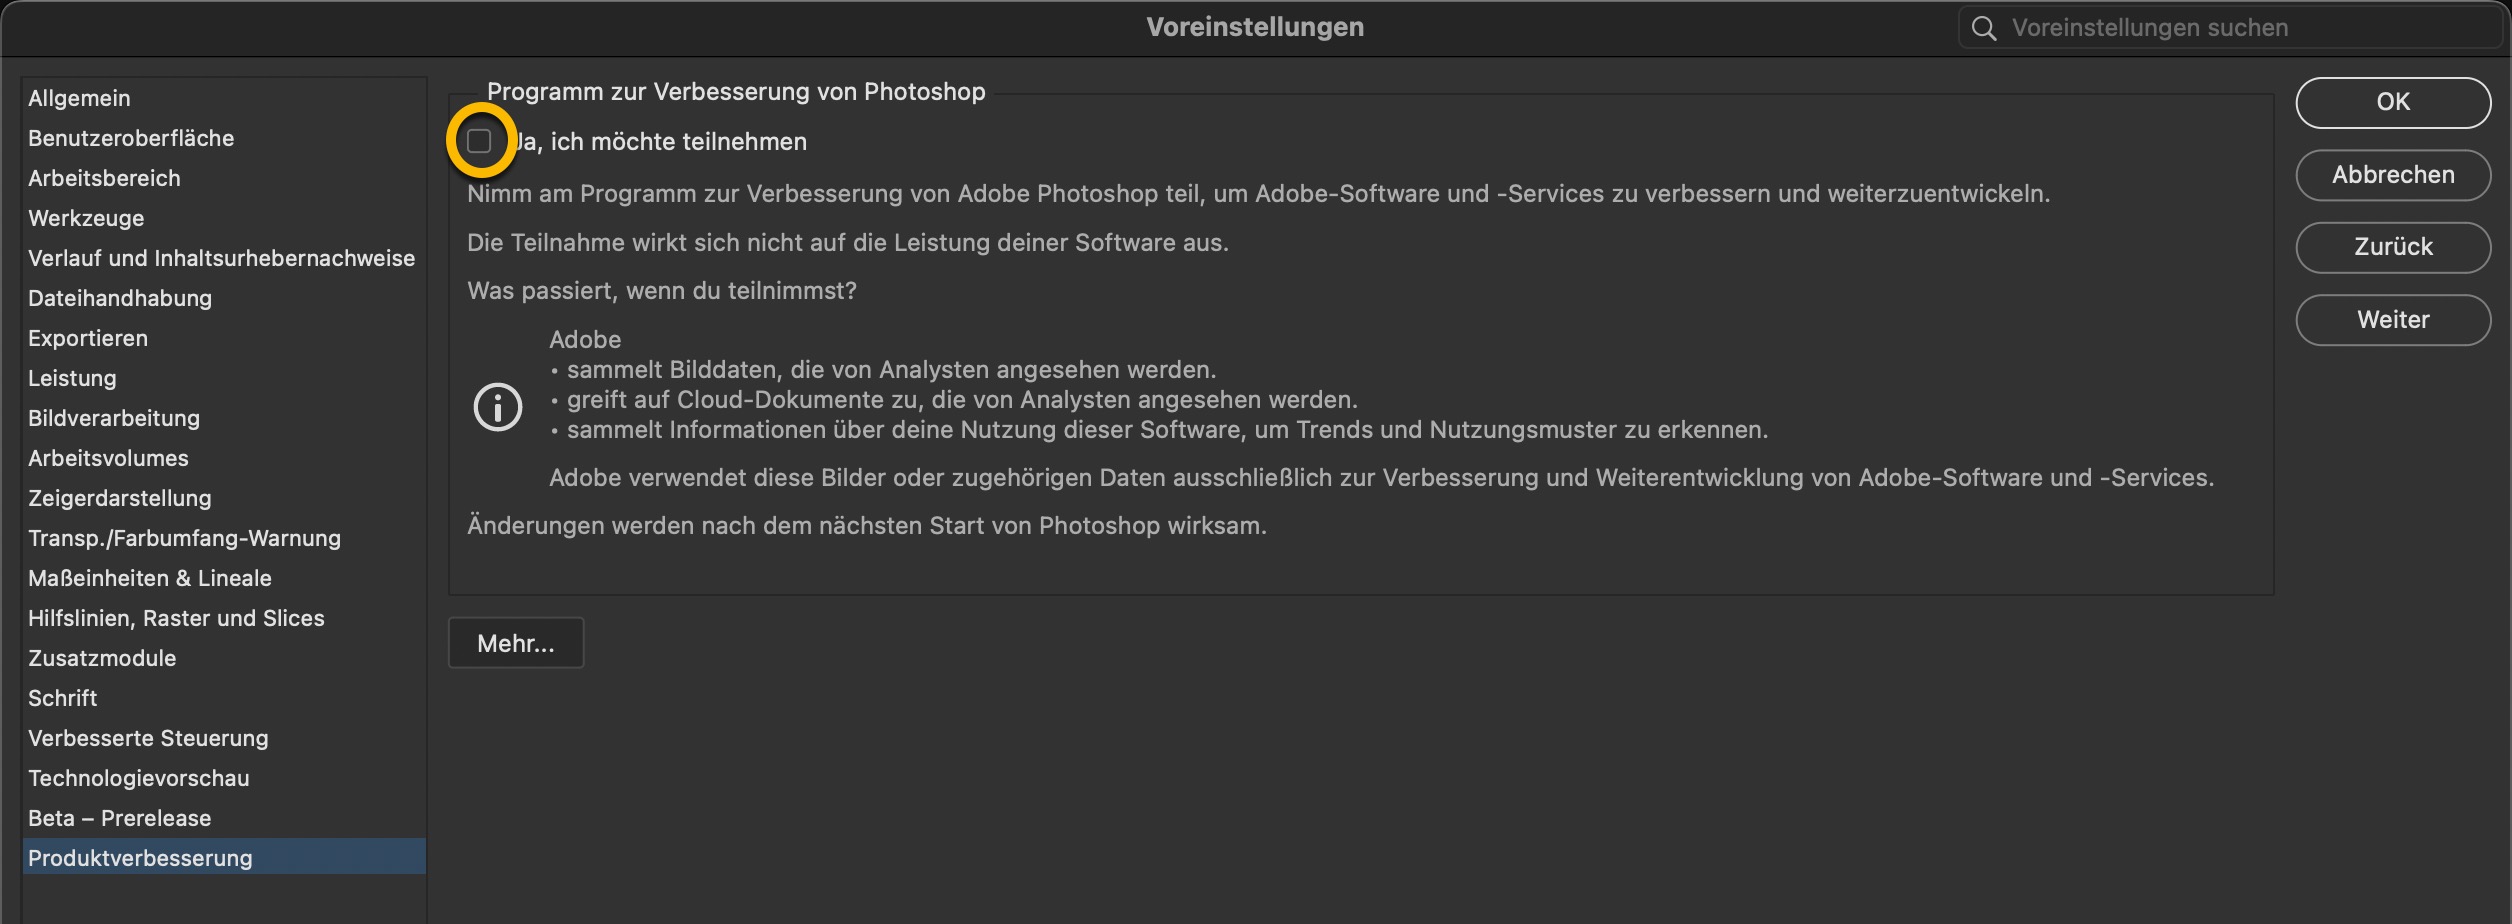 Wirbel um Adobe-Nutzerbedingungen